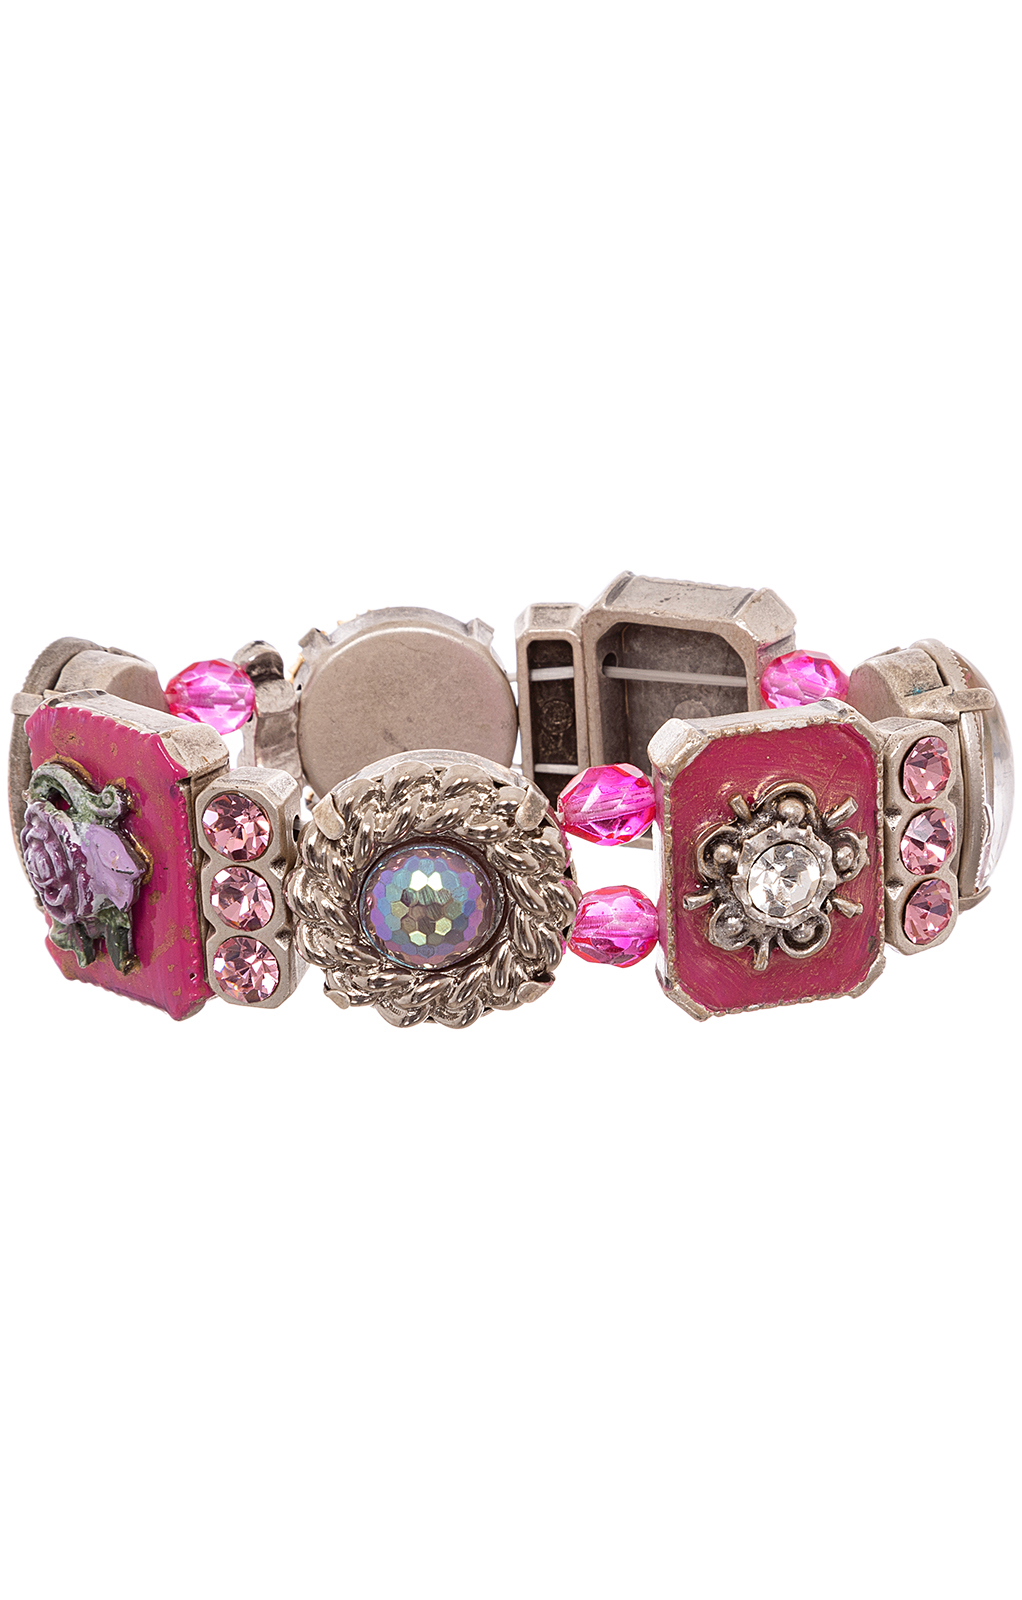 Tic-Armband 3808 pink von Alpenwahn